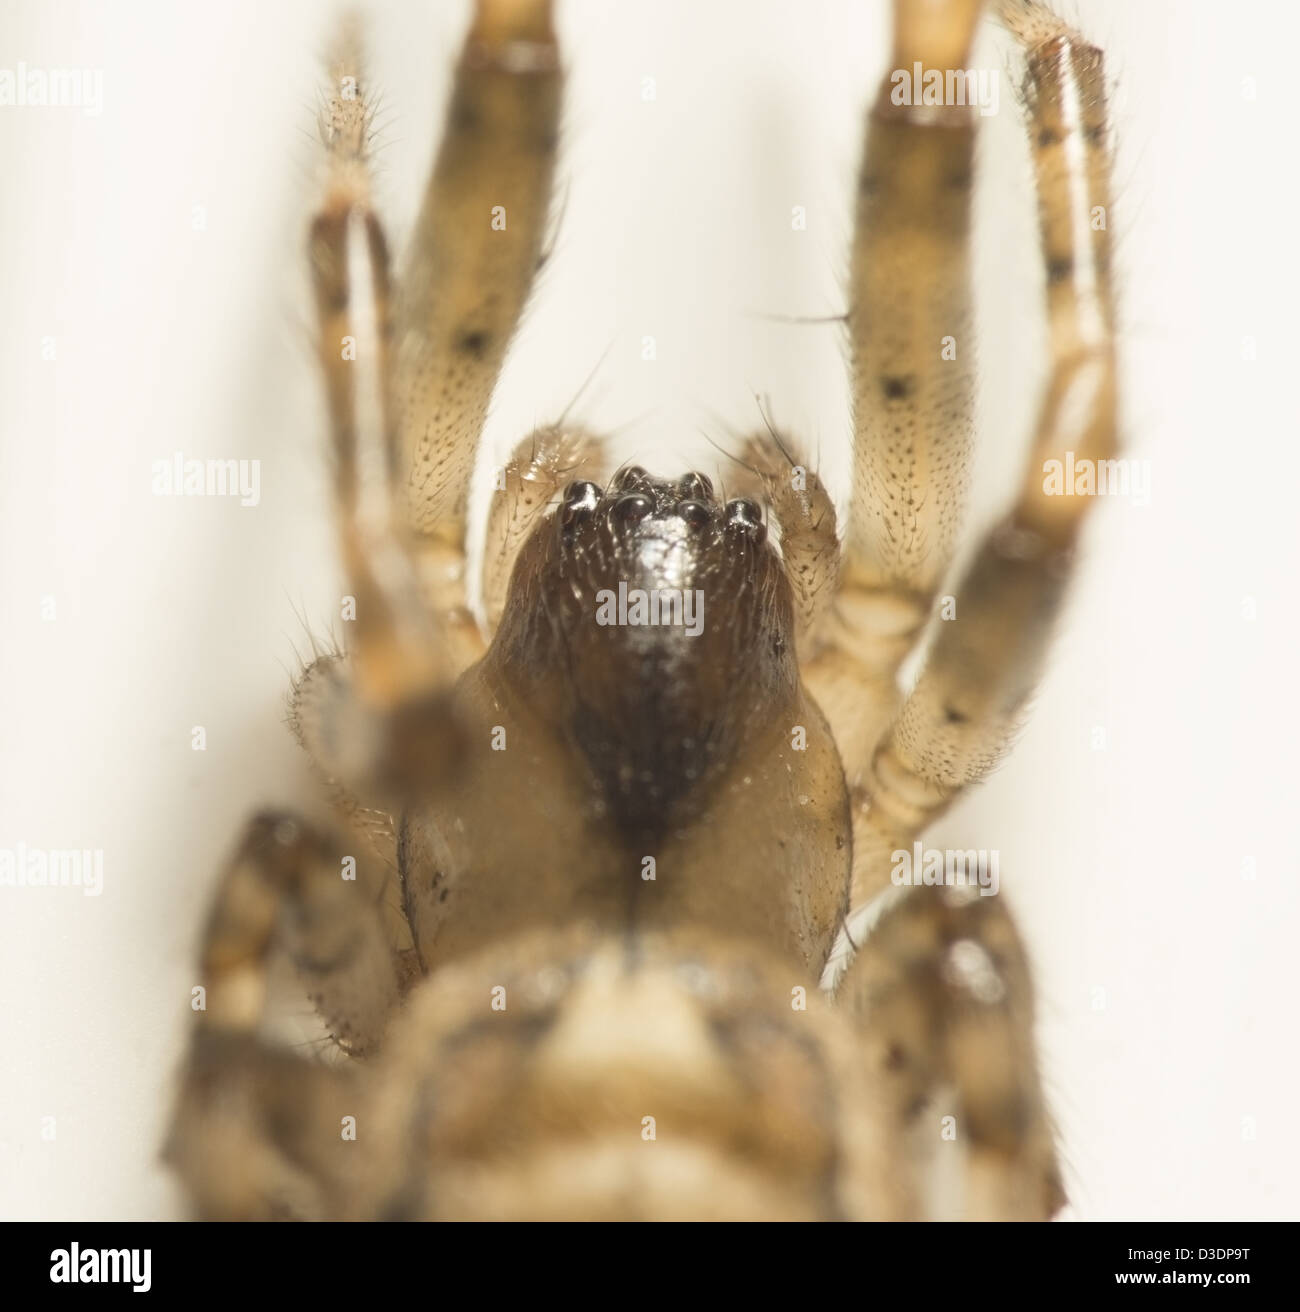 Eine Makroaufnahme einer kleinen Spinne ca. 1,2 cm in der Länge auf weißer Upvc Fensterrahmen Stockfoto